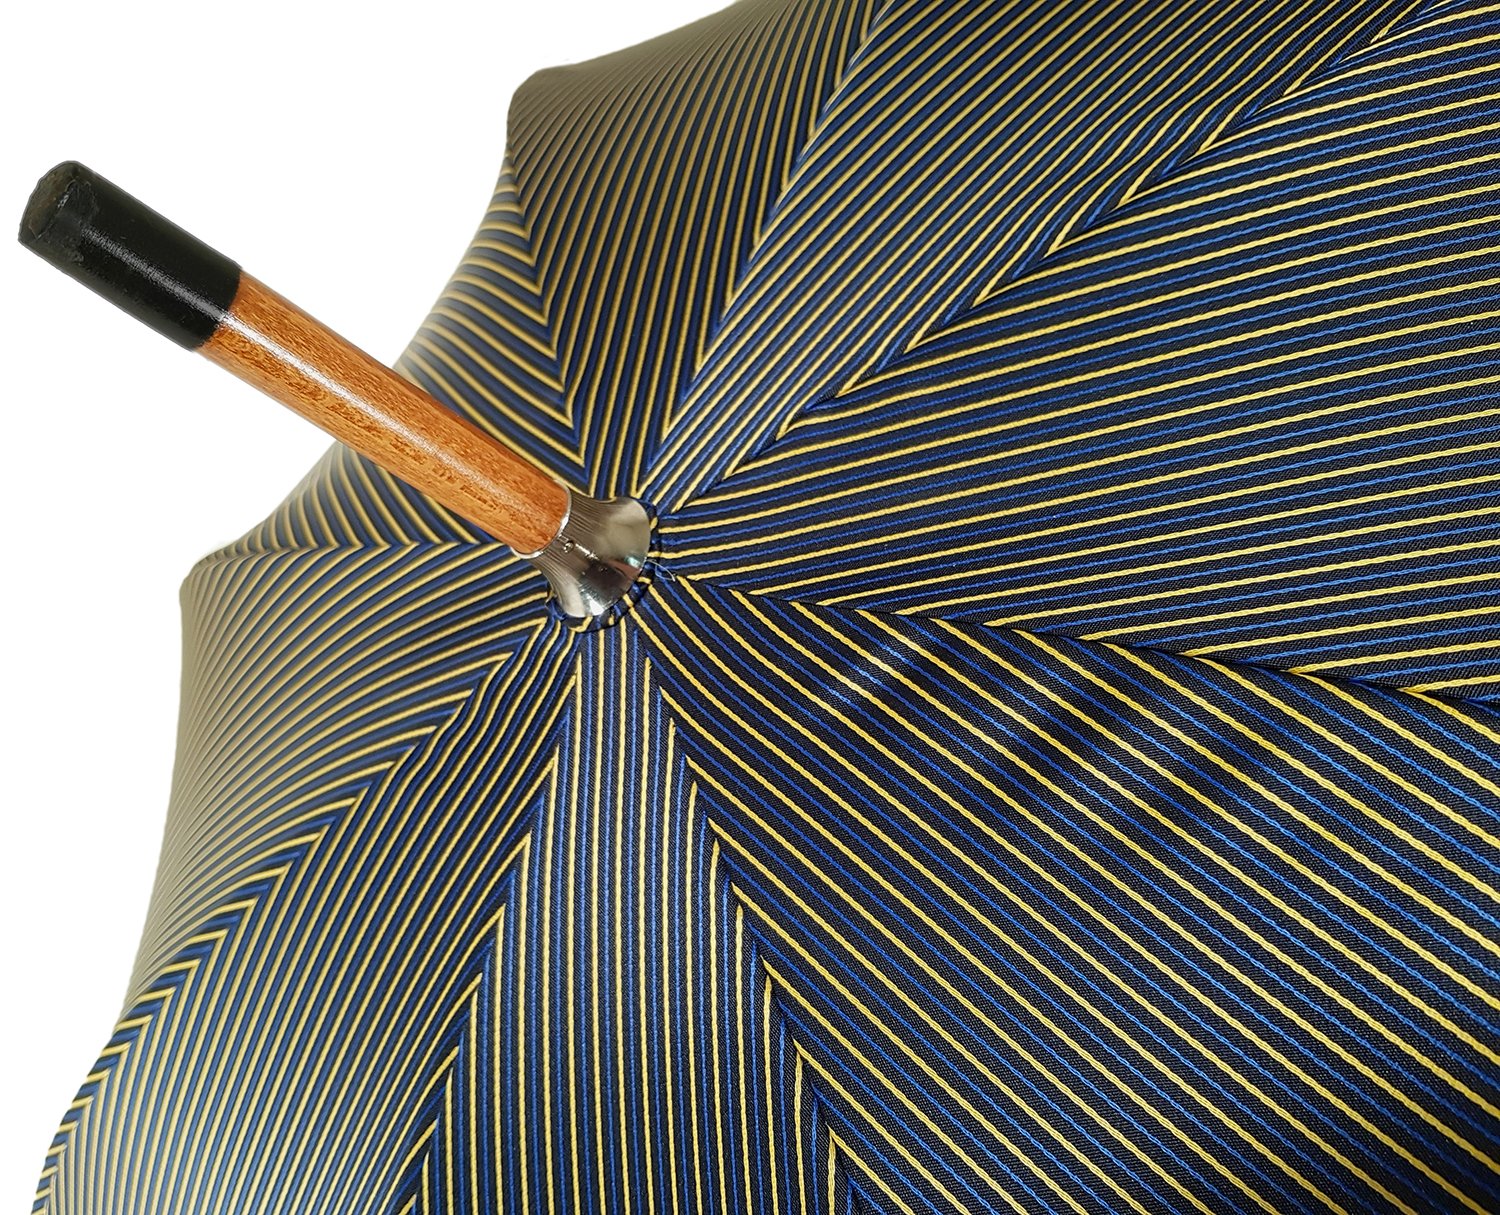 Double Cloth Men's Umbrella - Multicolored Striped Design - il-marchesato